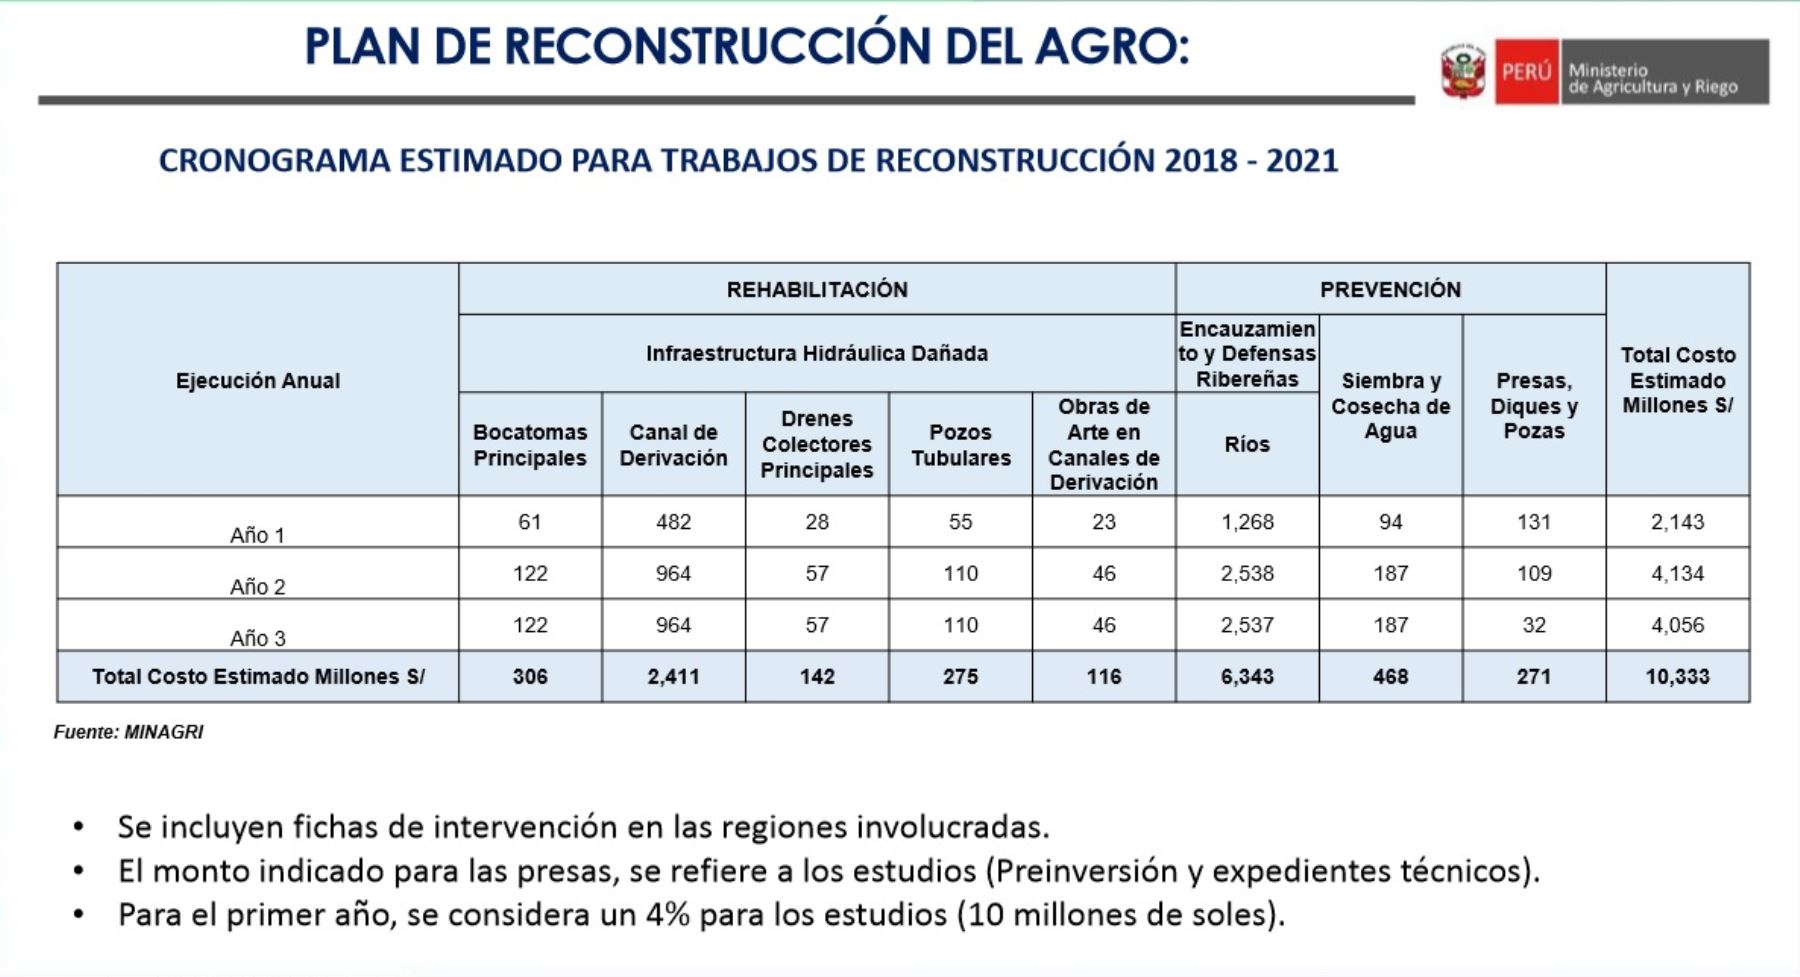 Cronograma de los trabajos de reconstrucción a cargo del Ministerio de Agricultura y Riego en la región Áncash, en el proceso de reconstrucción con cambios.